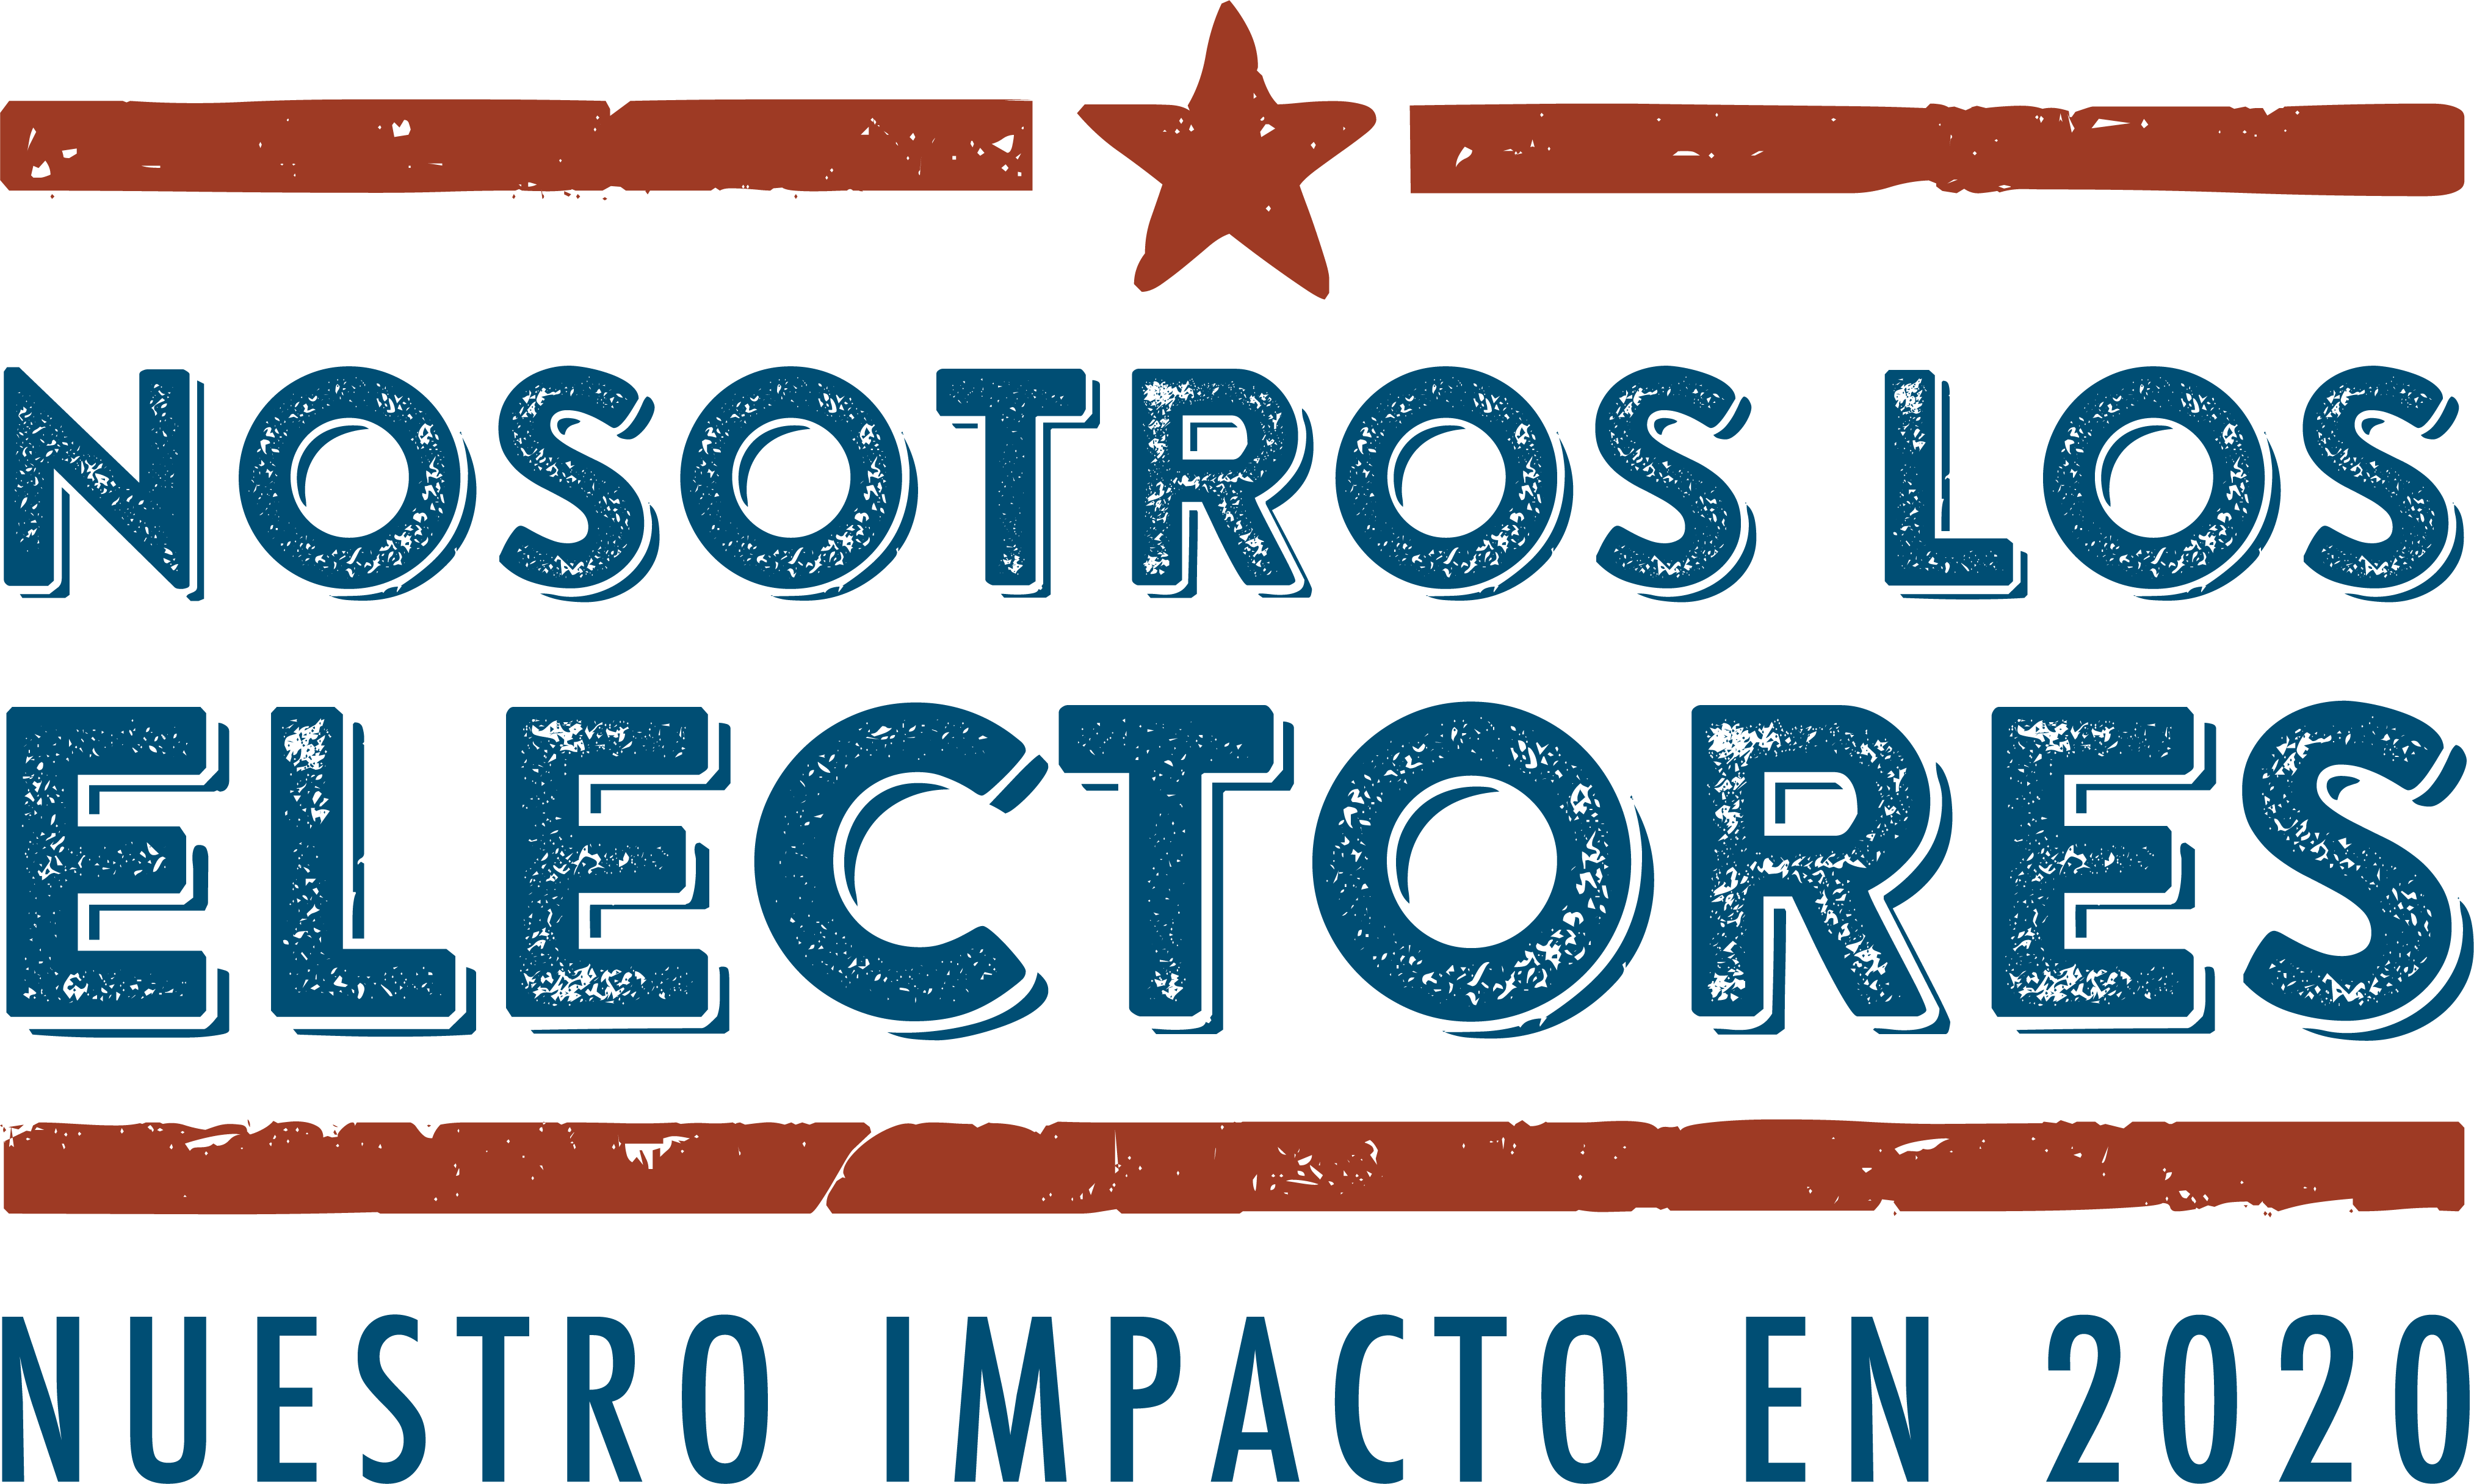 Nosotros, el logotipo de los votantes